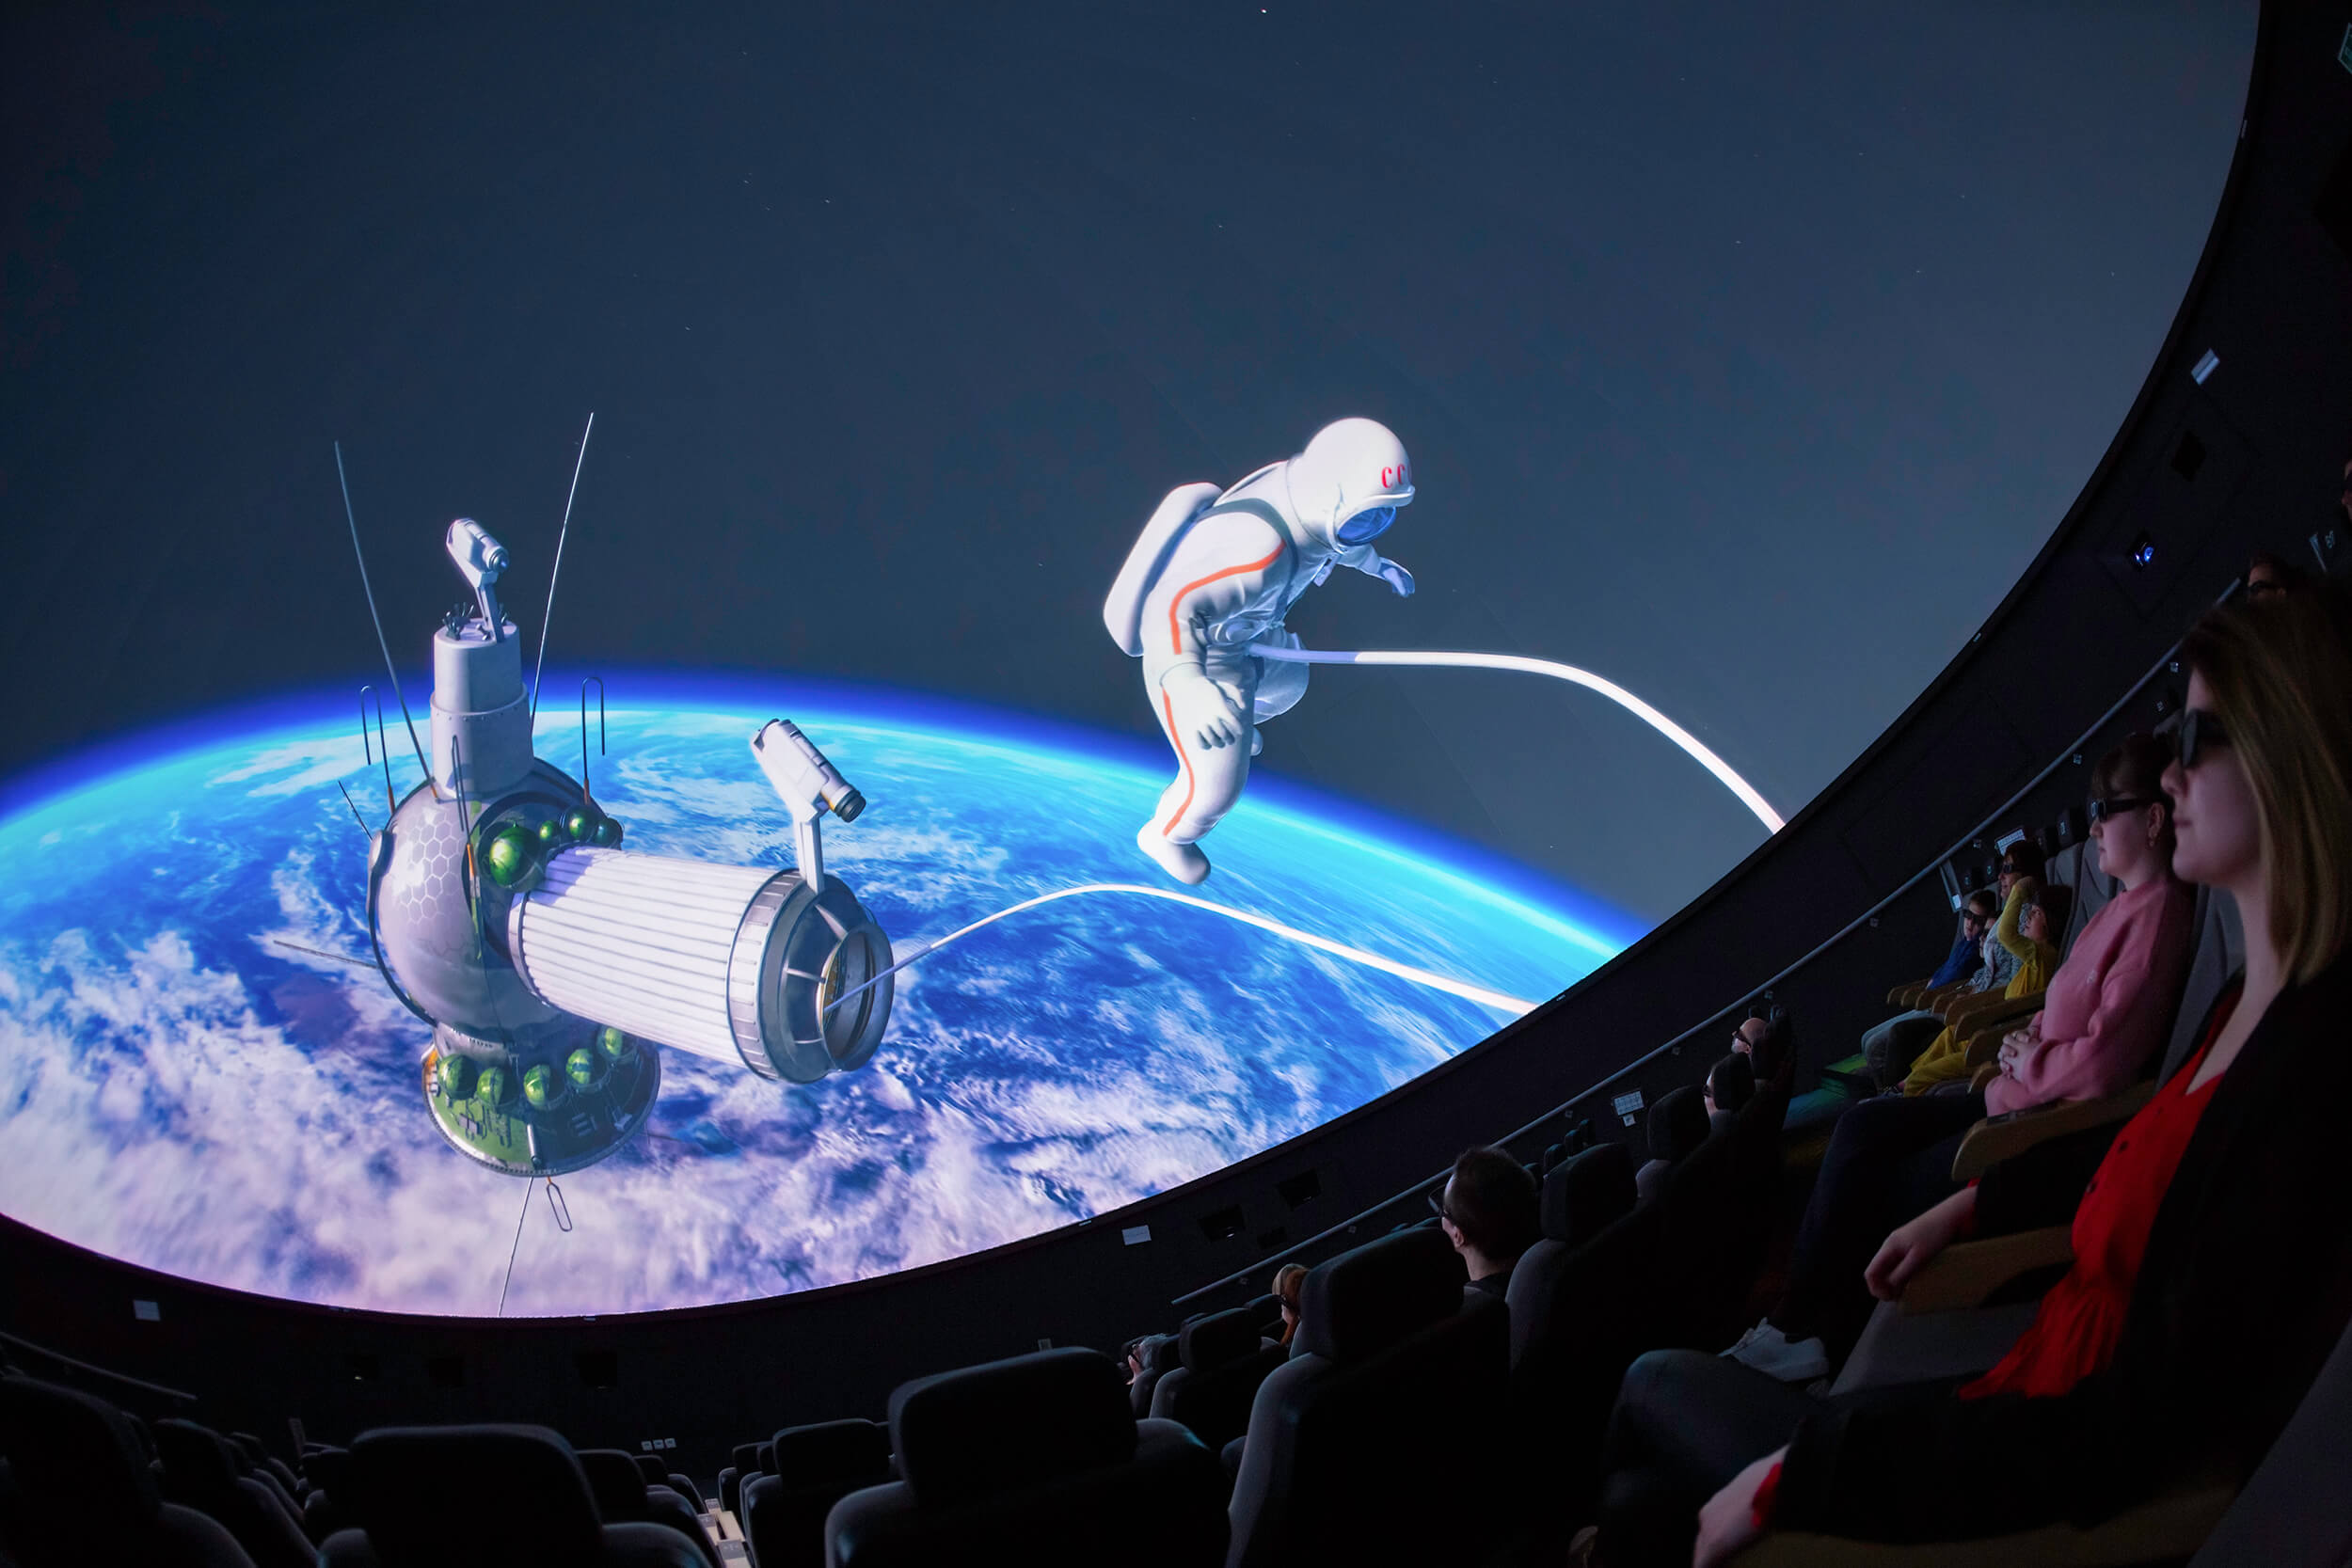 Voyage spatial privé à 360° entertainment Emmener vos convives dans les étoiles à bord du Planétarium 10K-3D le plus moderne au monde !
Faites vivre l'expérience de flotter dans l’Univers, foncer vers la Lune à bord de Saturn V, poser le pied sur Mars...

Chaque séance débute par un voyage spatial commenté par un
animateur de la Coupole, suivie d’un film thématique.

Tarifs : 
Séance non privatisée : 8 €/personne
Séance privatisée de planétarium 3D  avec un animateur : 220 € TTC (privatisation)+8 €/personne